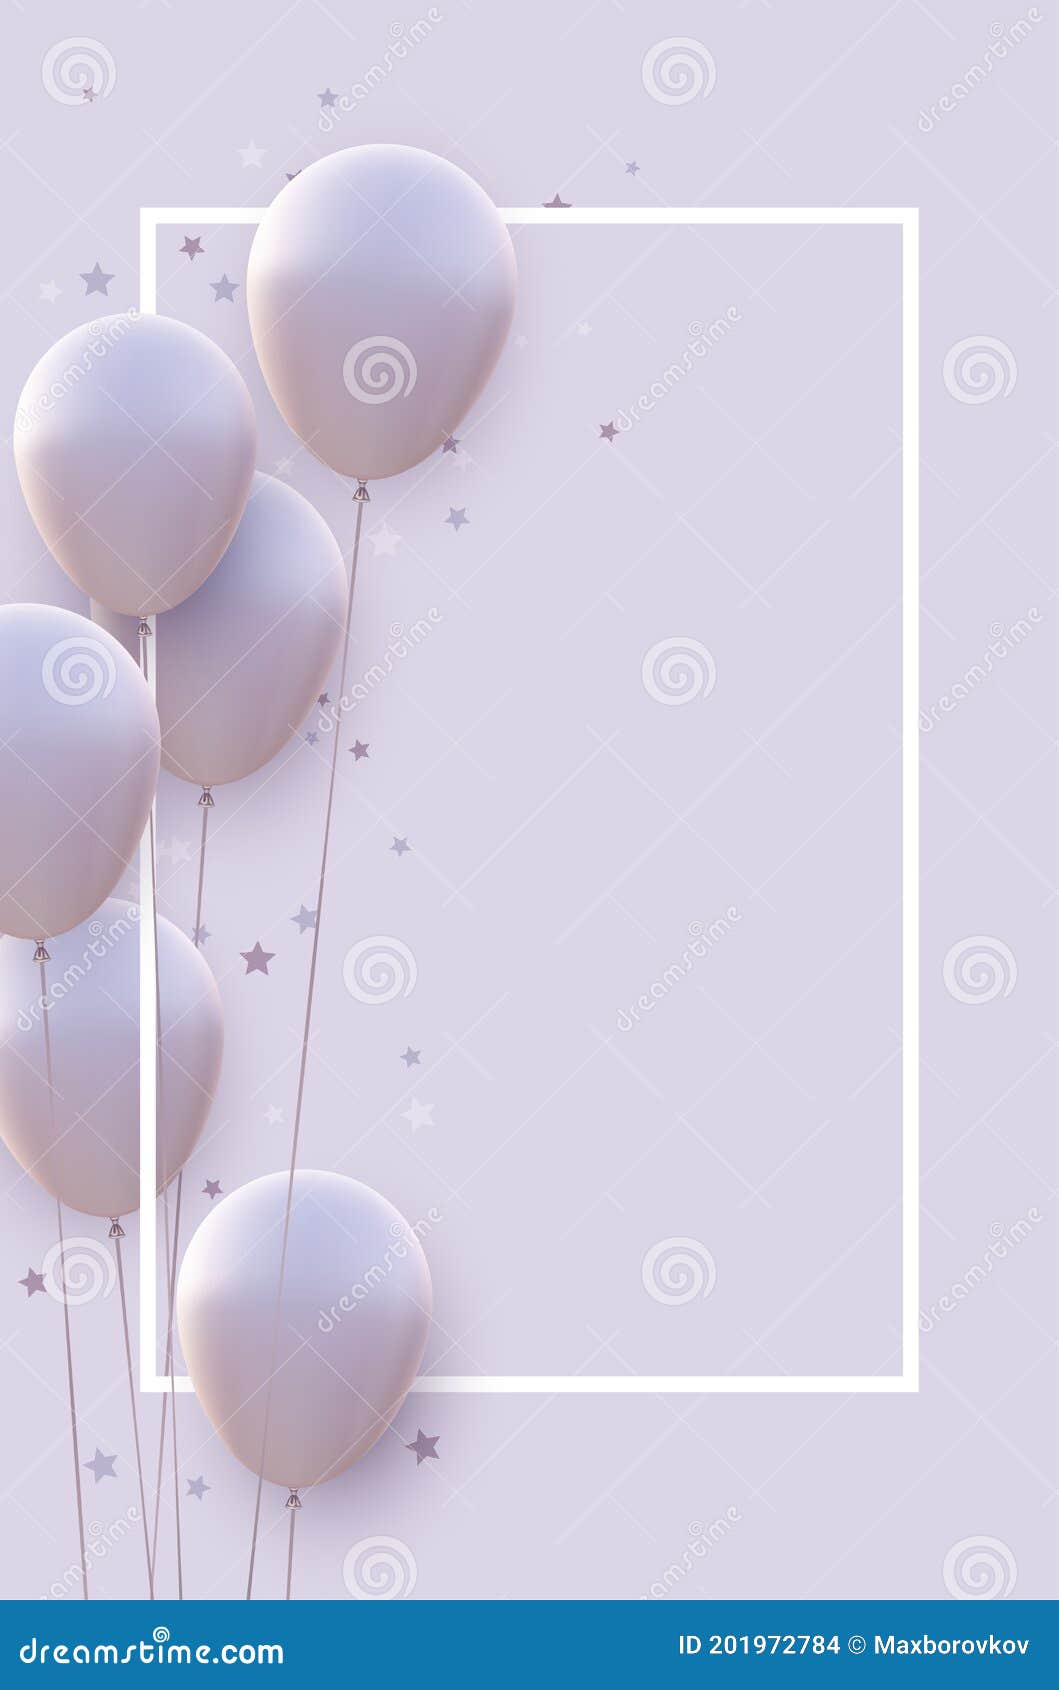 Marco de globos blancos en vector de diseño de fondo blanco y gris